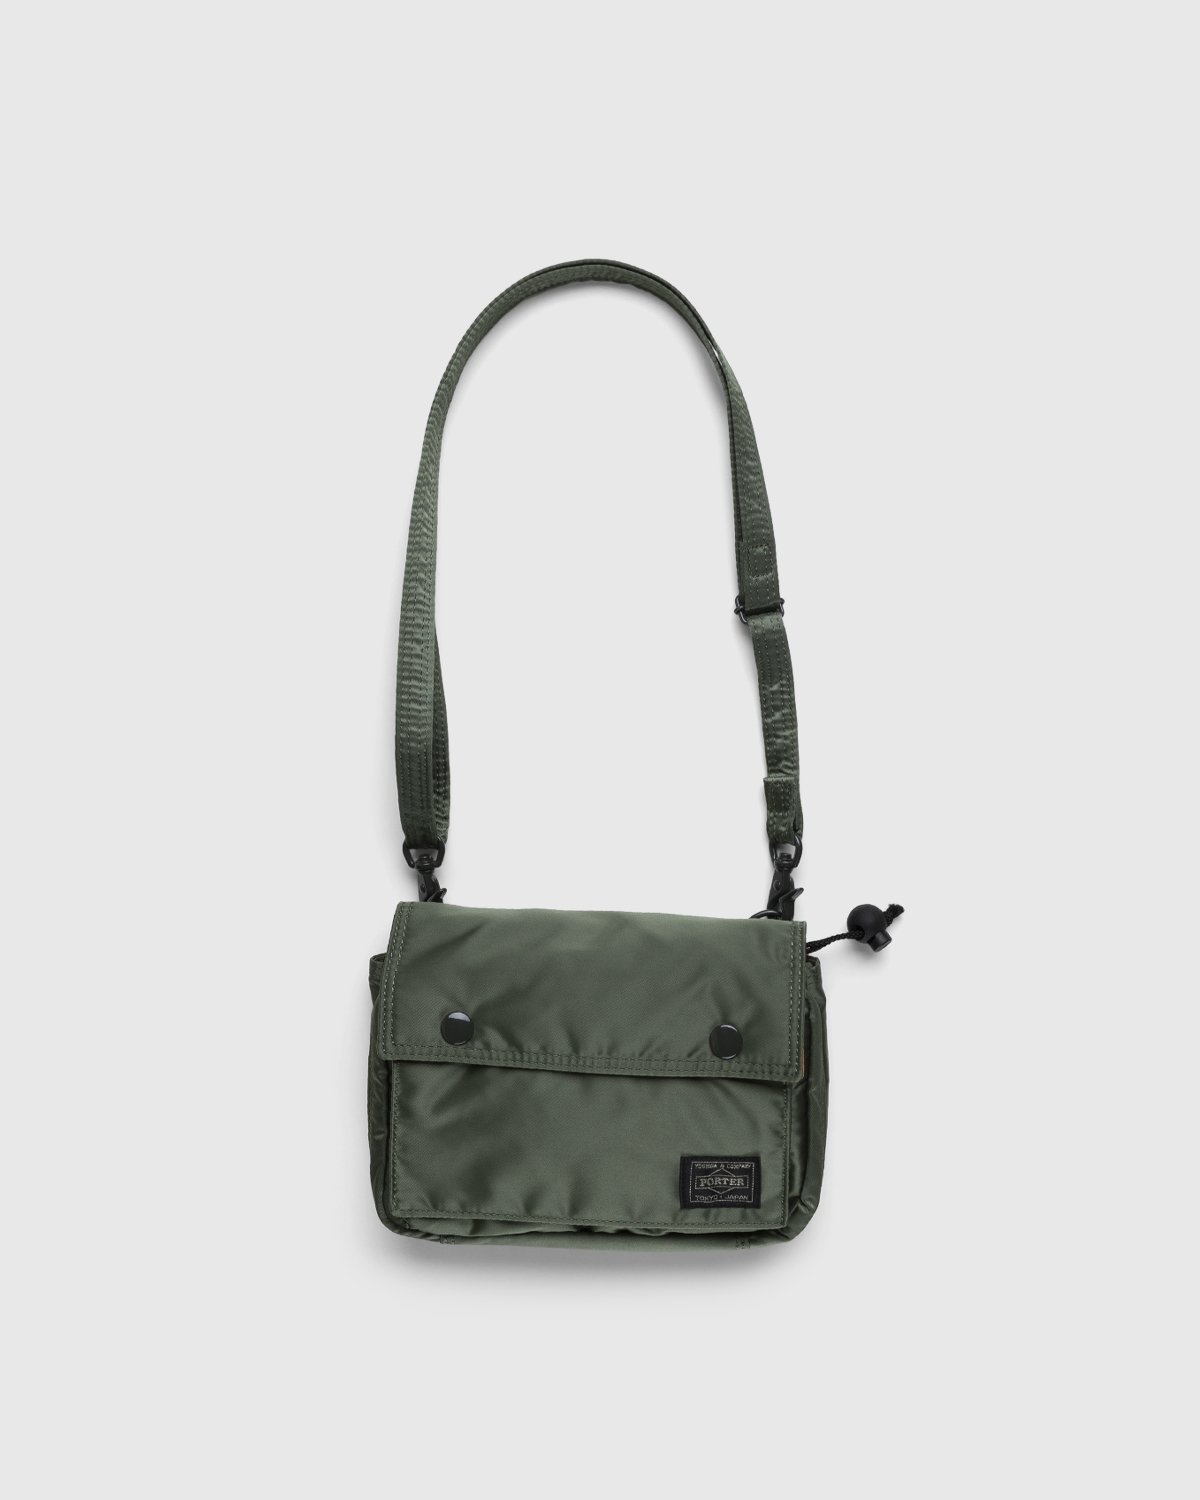 Porter-Yoshida & Co. - Tanker Clip Shoulder Bag Sage Green - Accessories - Green - Image 1